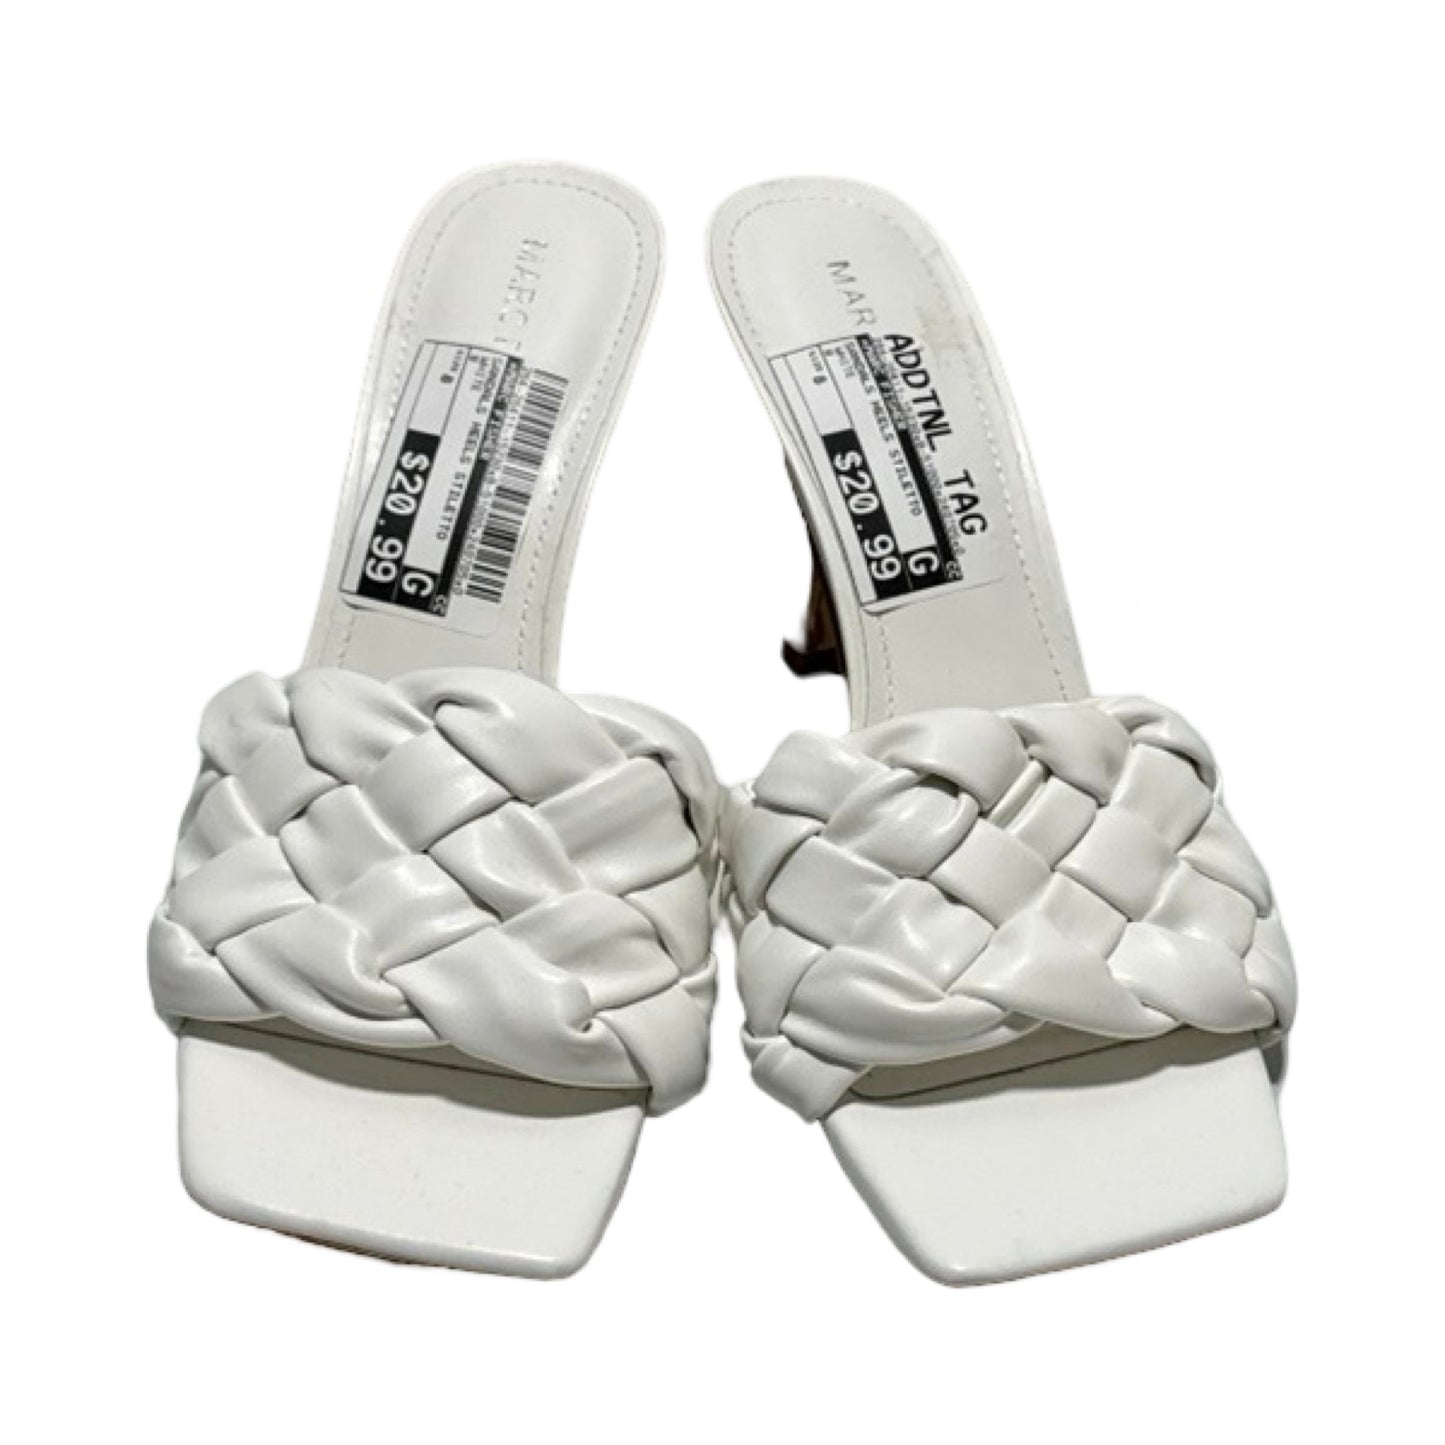 White Sandals Heels Stiletto Marc Fisher, Size 8